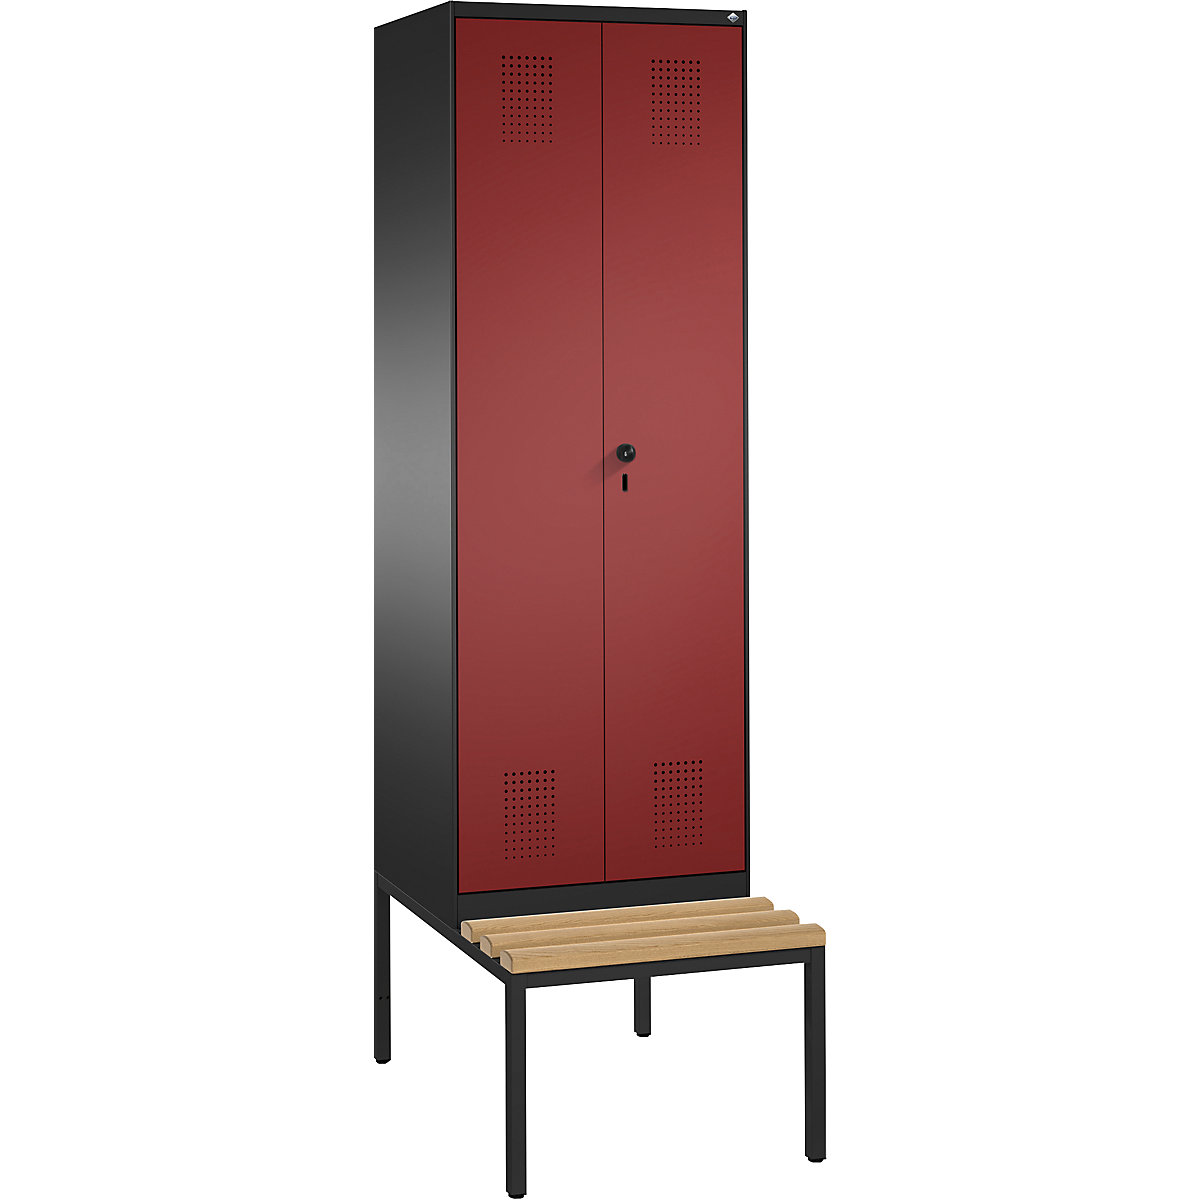 Szafa szatniowa EVOLO, drzwi zamykane do siebie, z ławką – C+P, 2 przedziały, szer. przedziału 300 mm, czarno-szara / rubinowo-czerwona-8